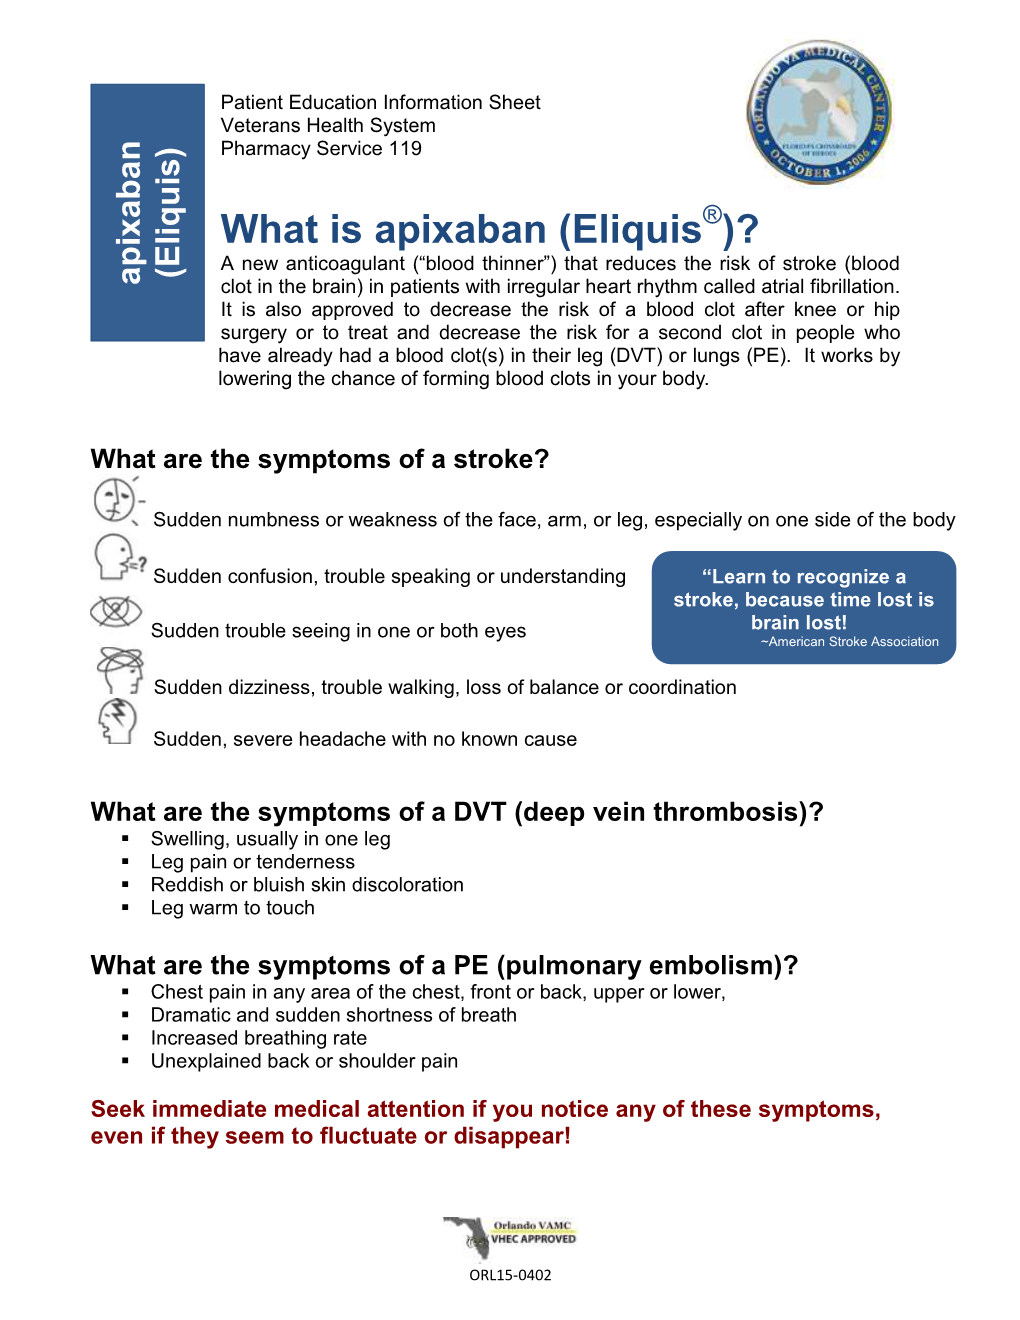 What Is Apixaban (Eliquis)?